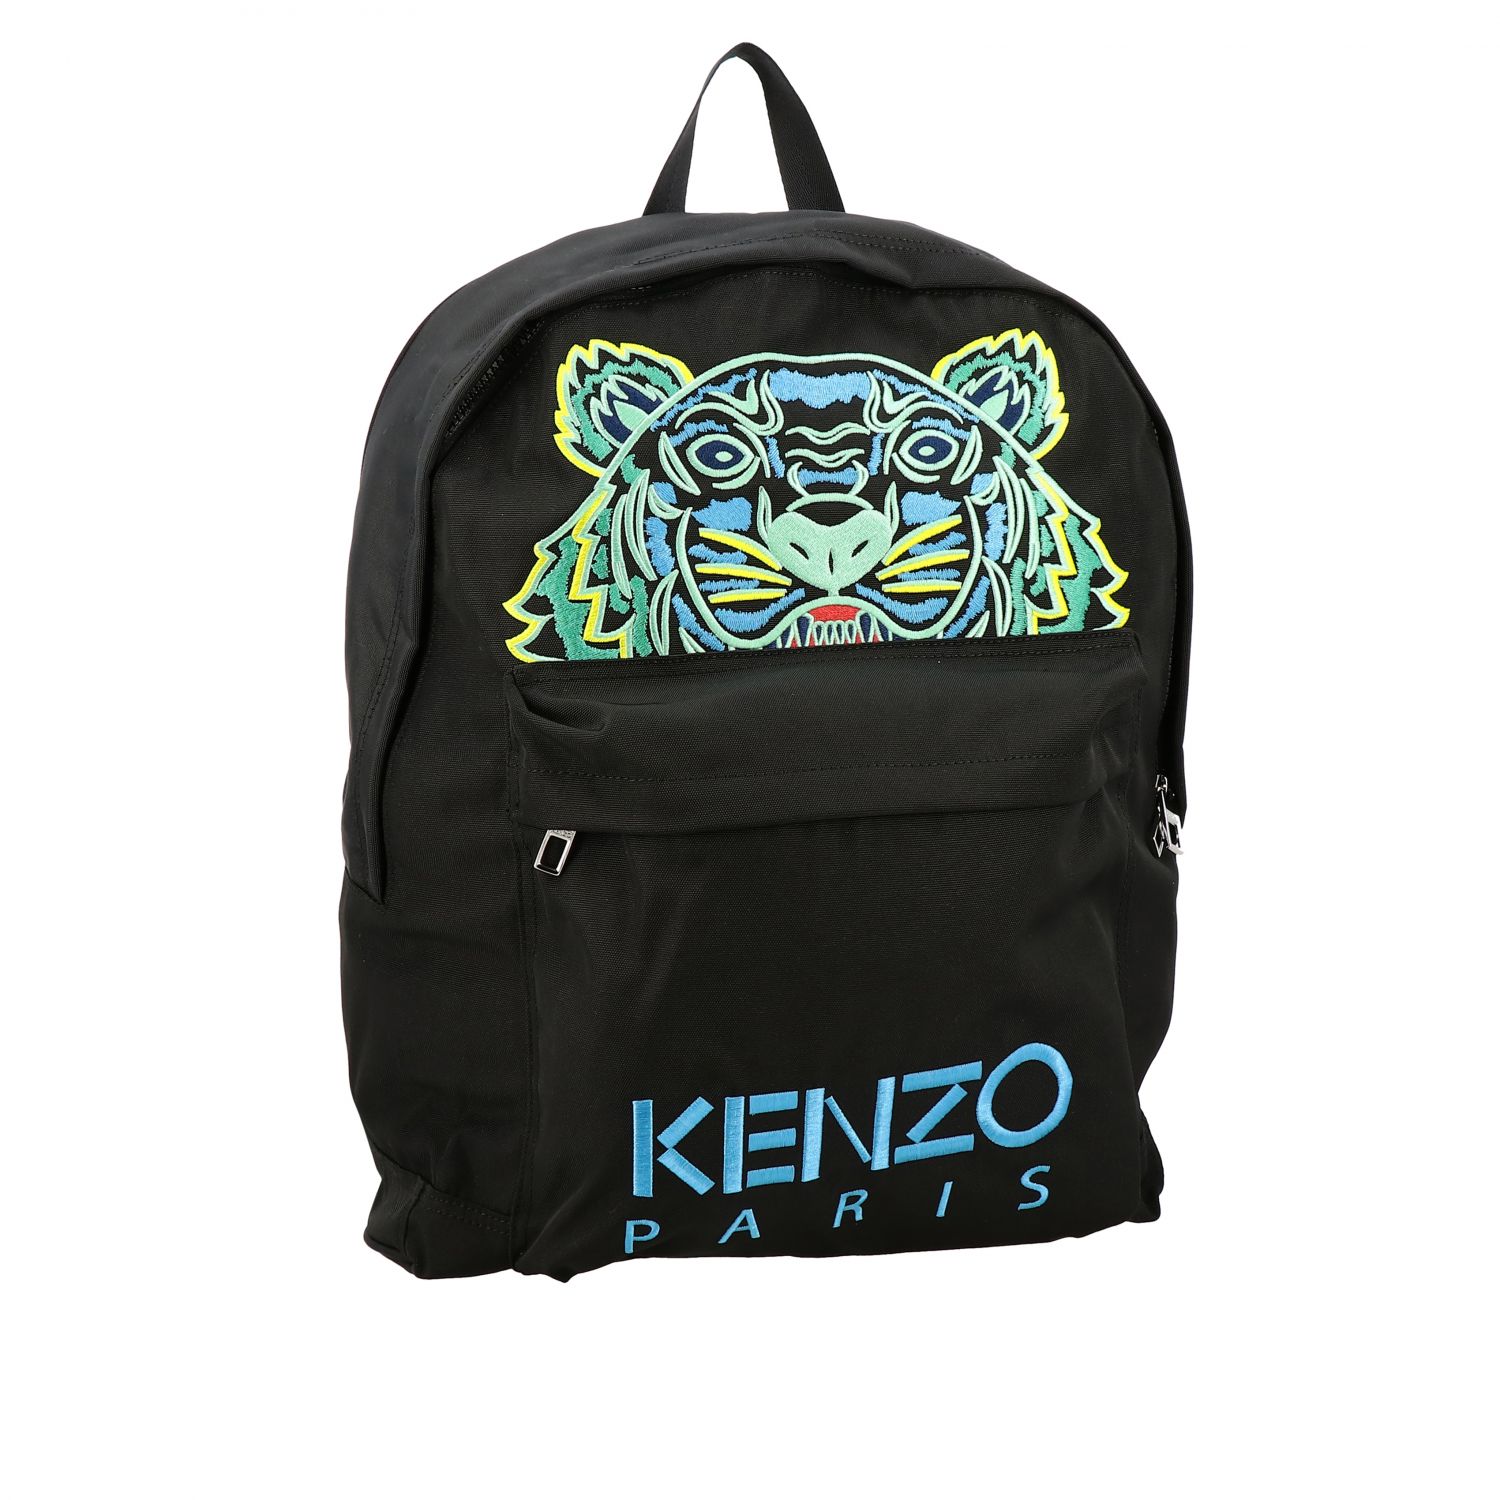 cheap kenzo backpack